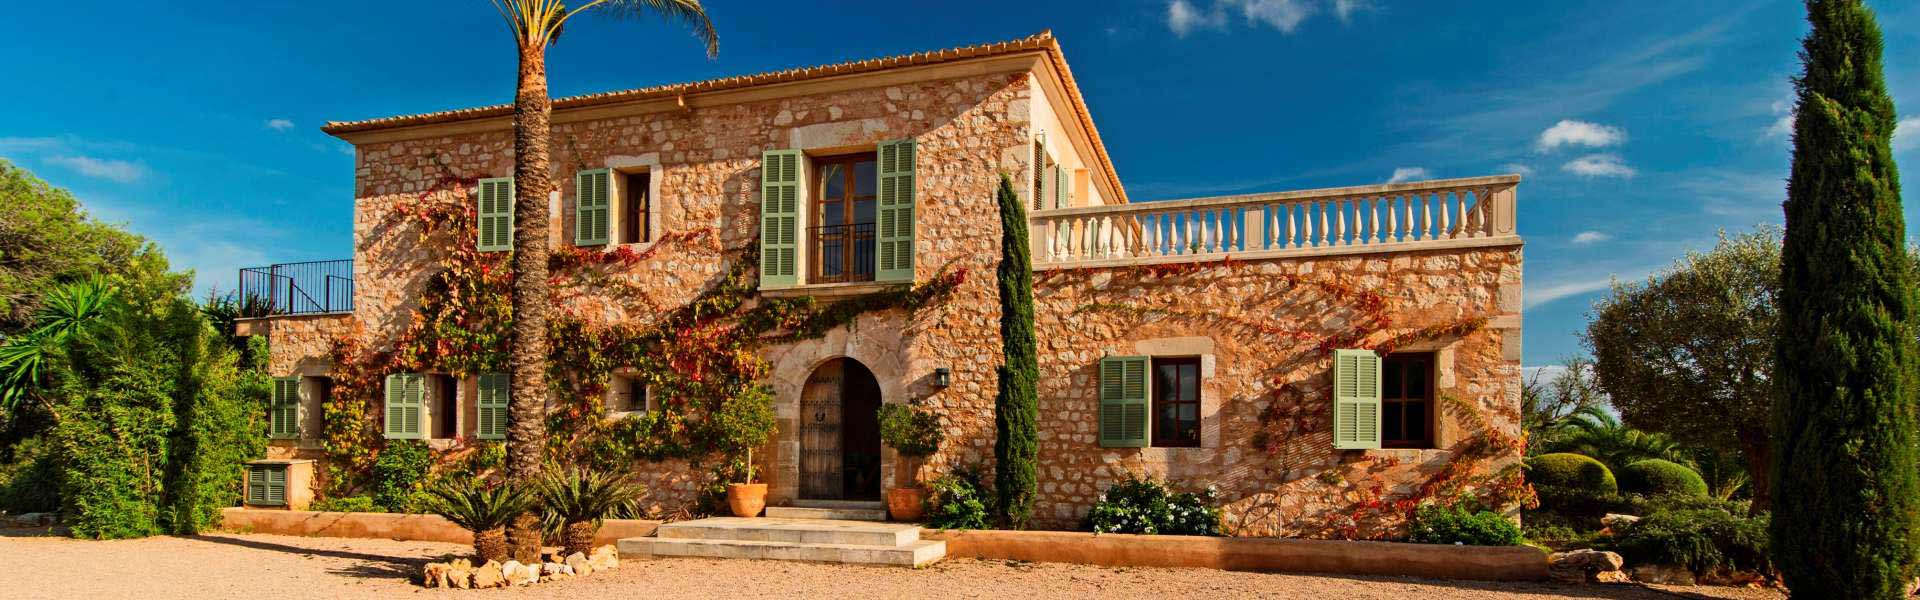 Montemar Immobilien Mallorca - Traditionelle Finca auf Mallorca